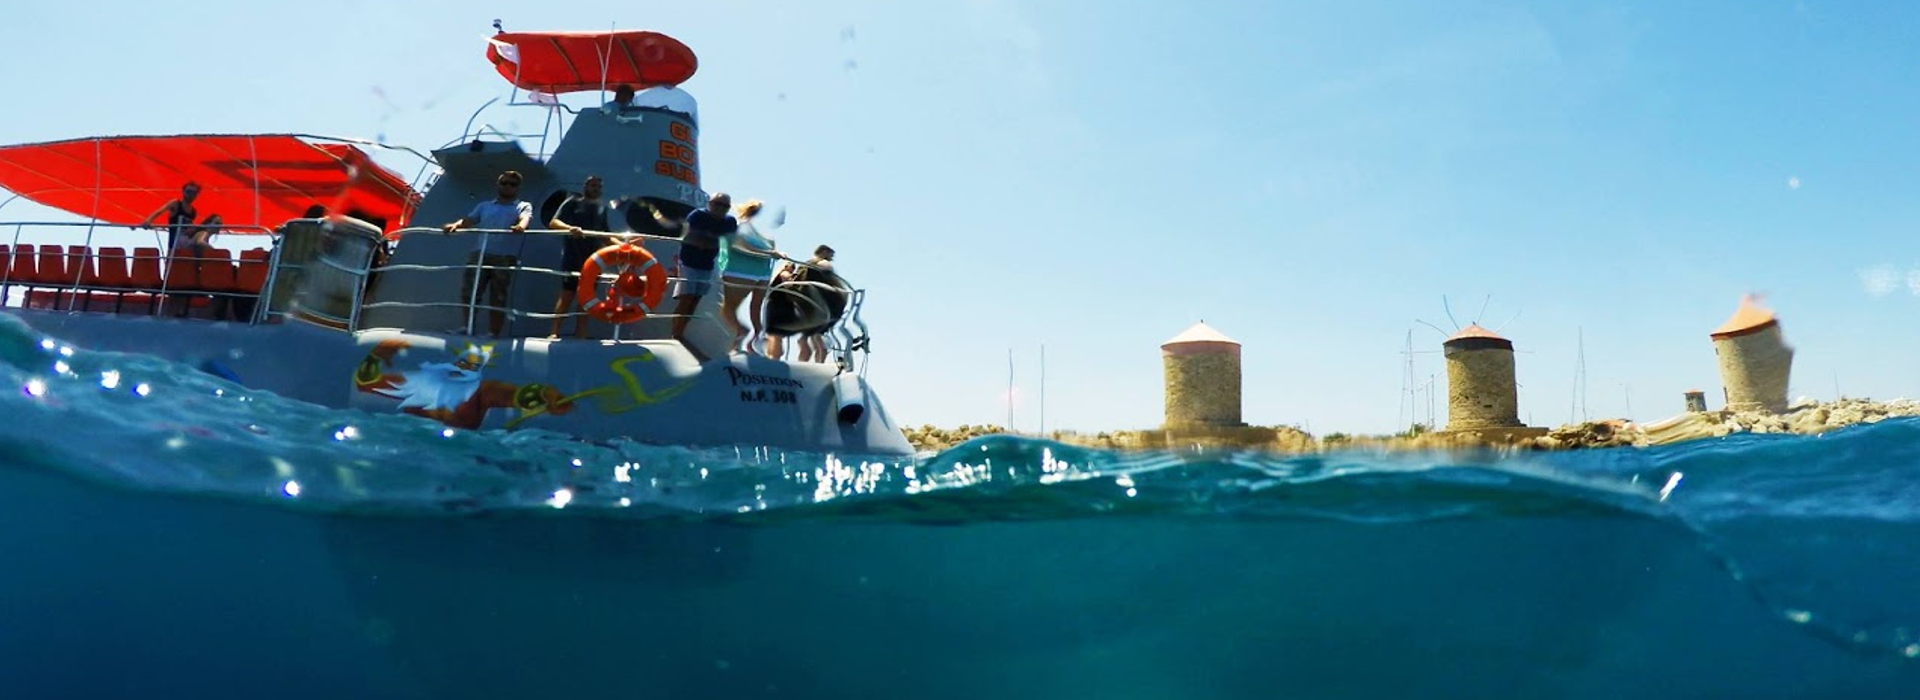 Poseidon Sottomarino Rodi | Captains Tours